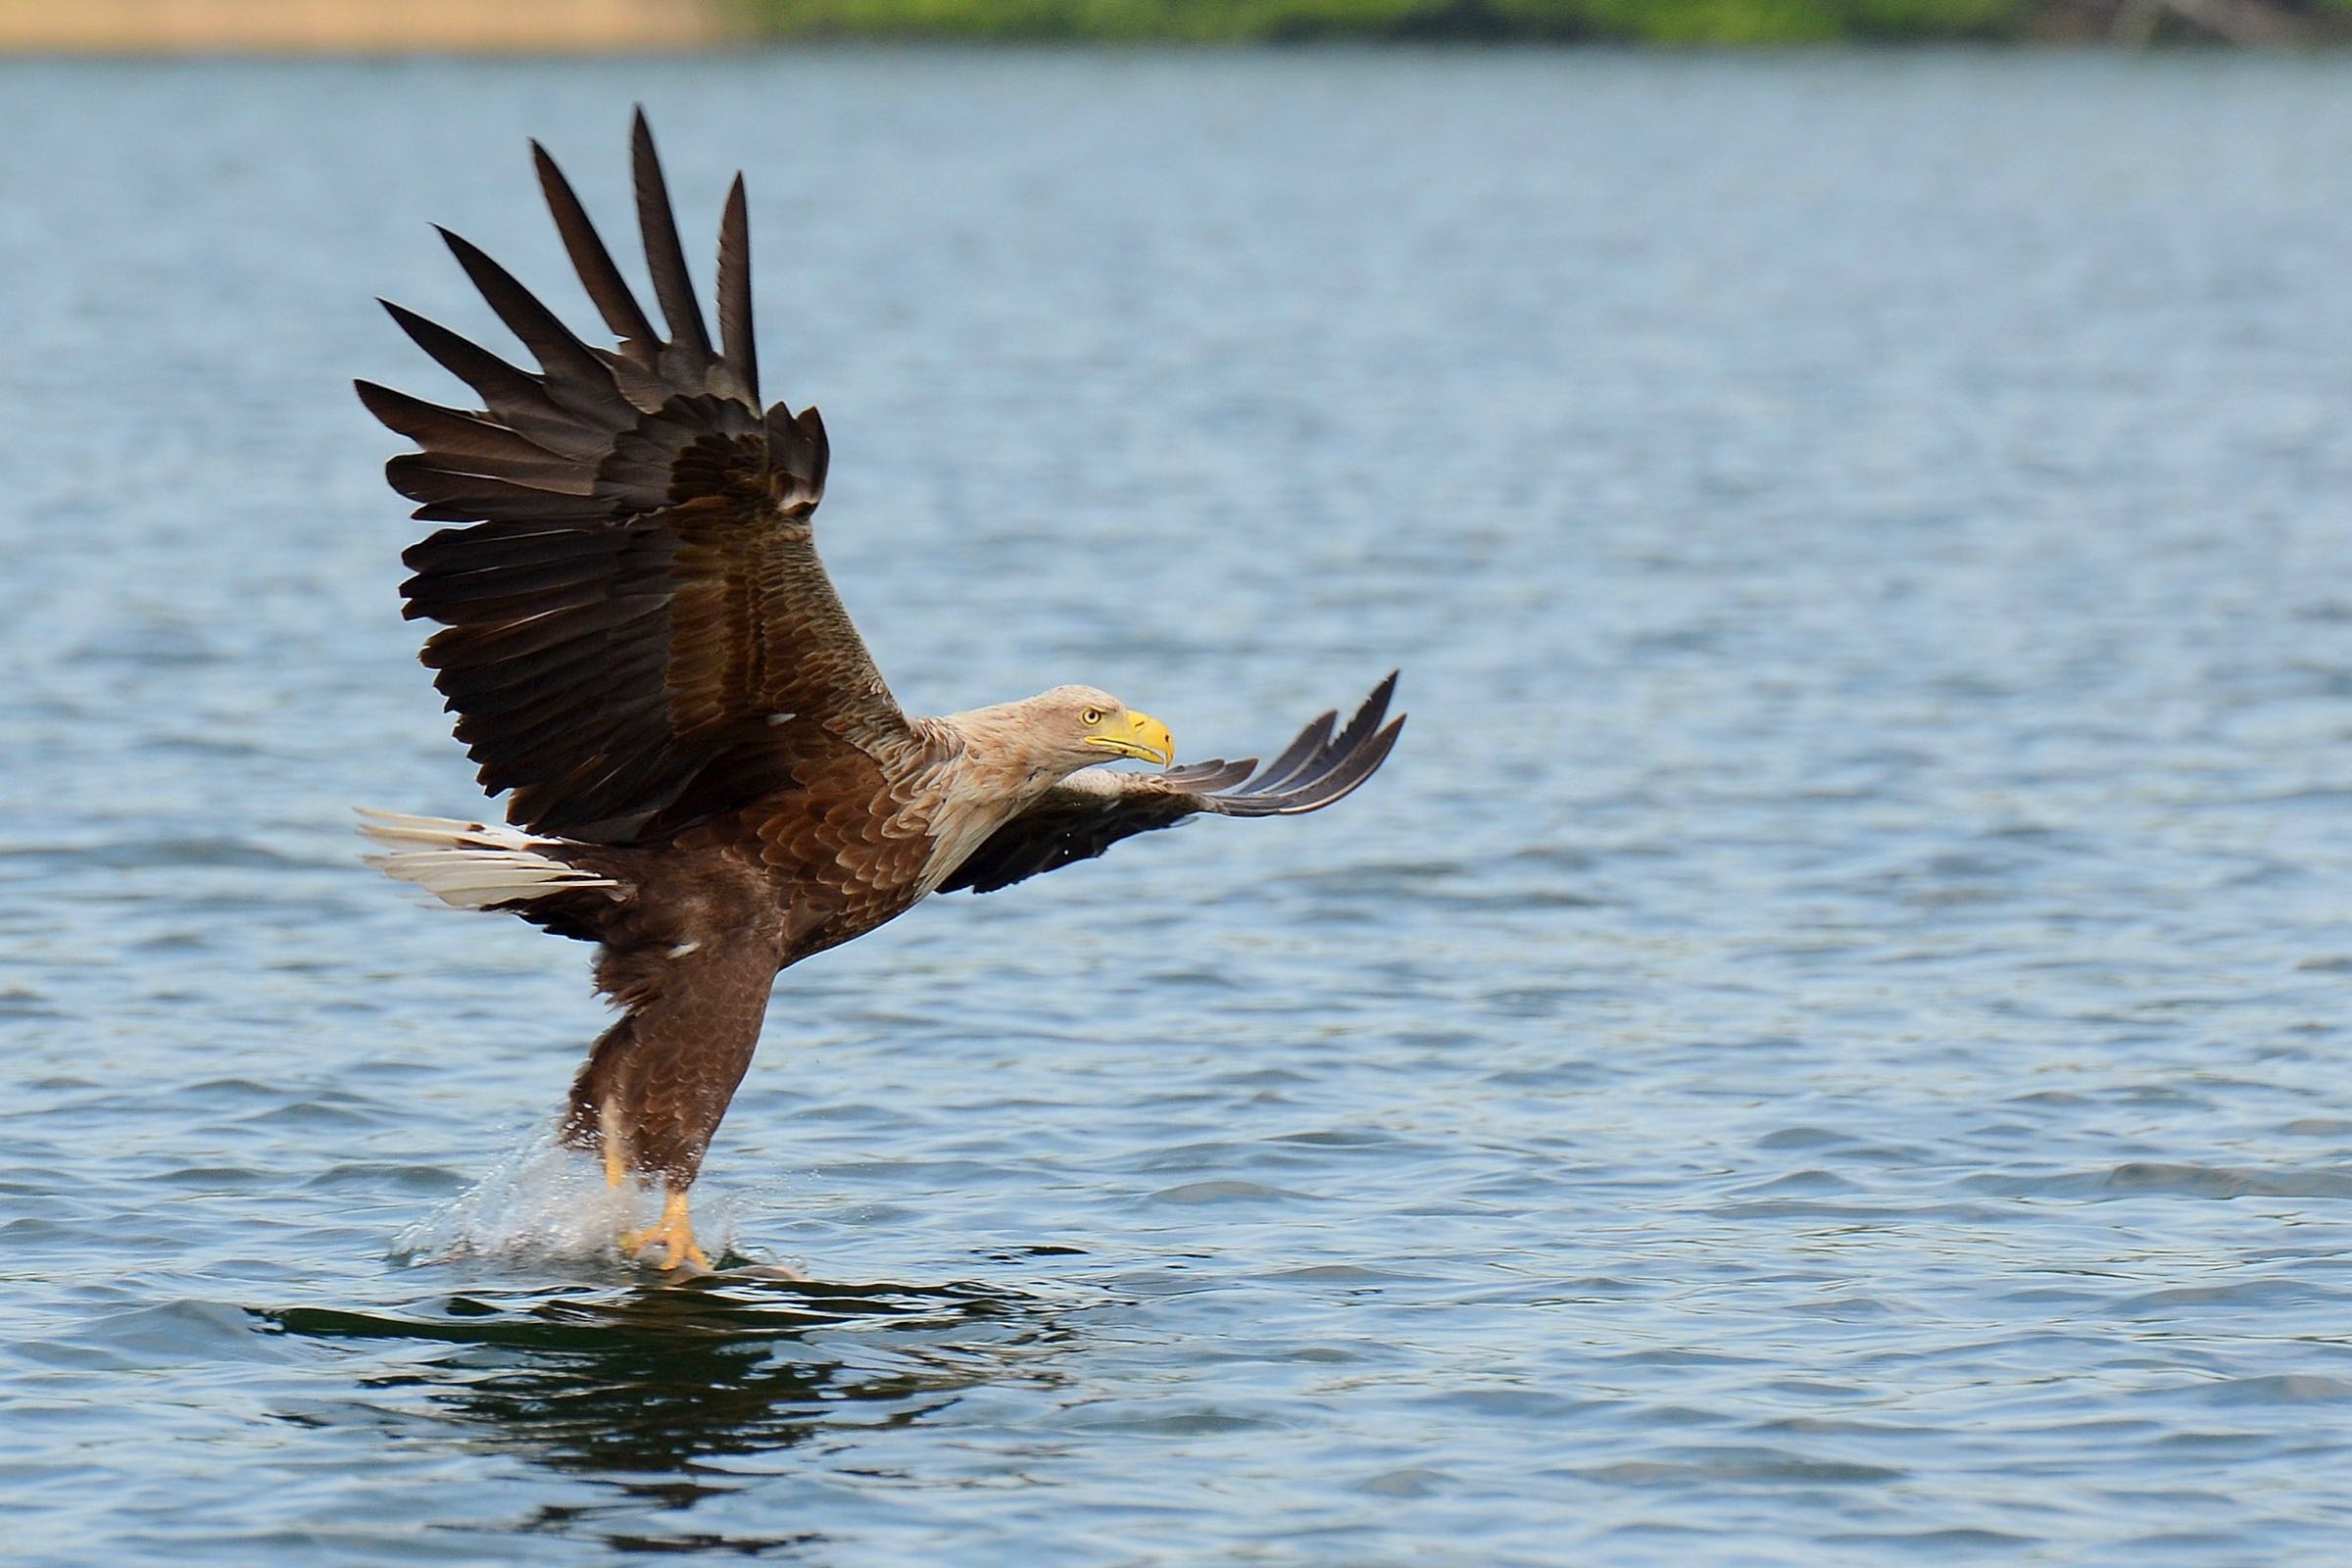 Erleben Sie die beeindruckende Vielfalt der Vögel im Speicherkoog am Nationalpark Wattenmeer. Wir laden Sie ein auf eine Entdeckungstour rund um heimische Brutvögel und weitgereiste Zugvögel.